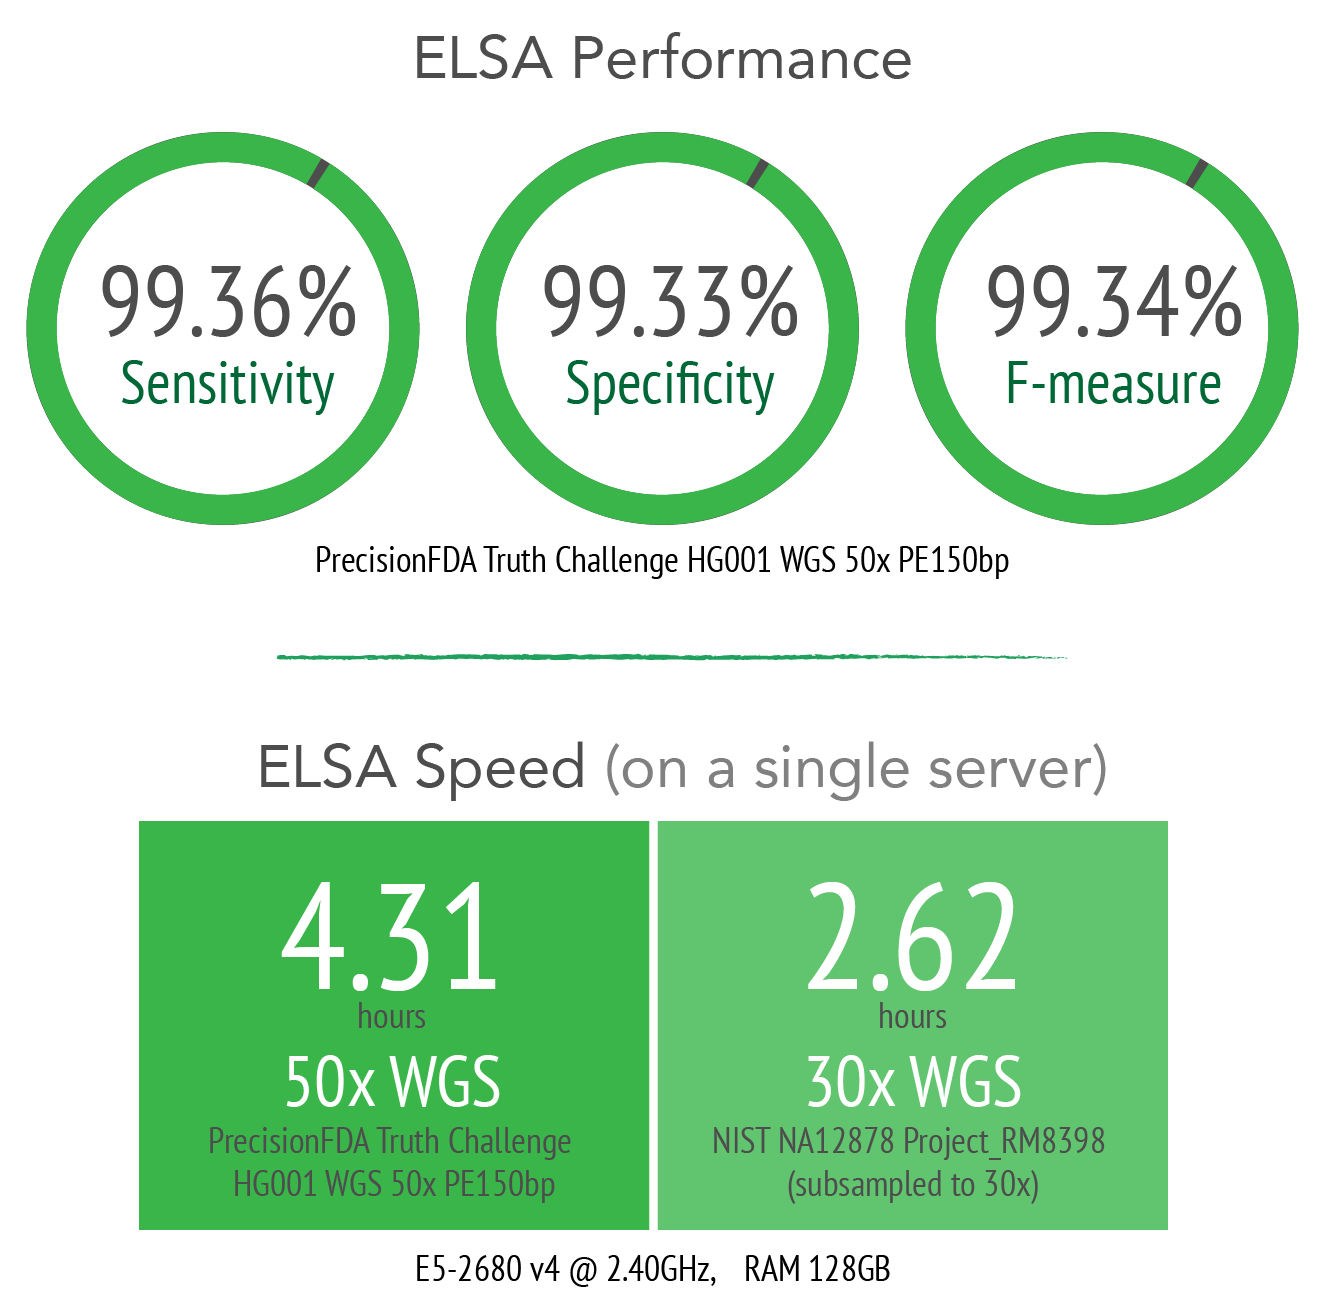 ELSA speed & performance